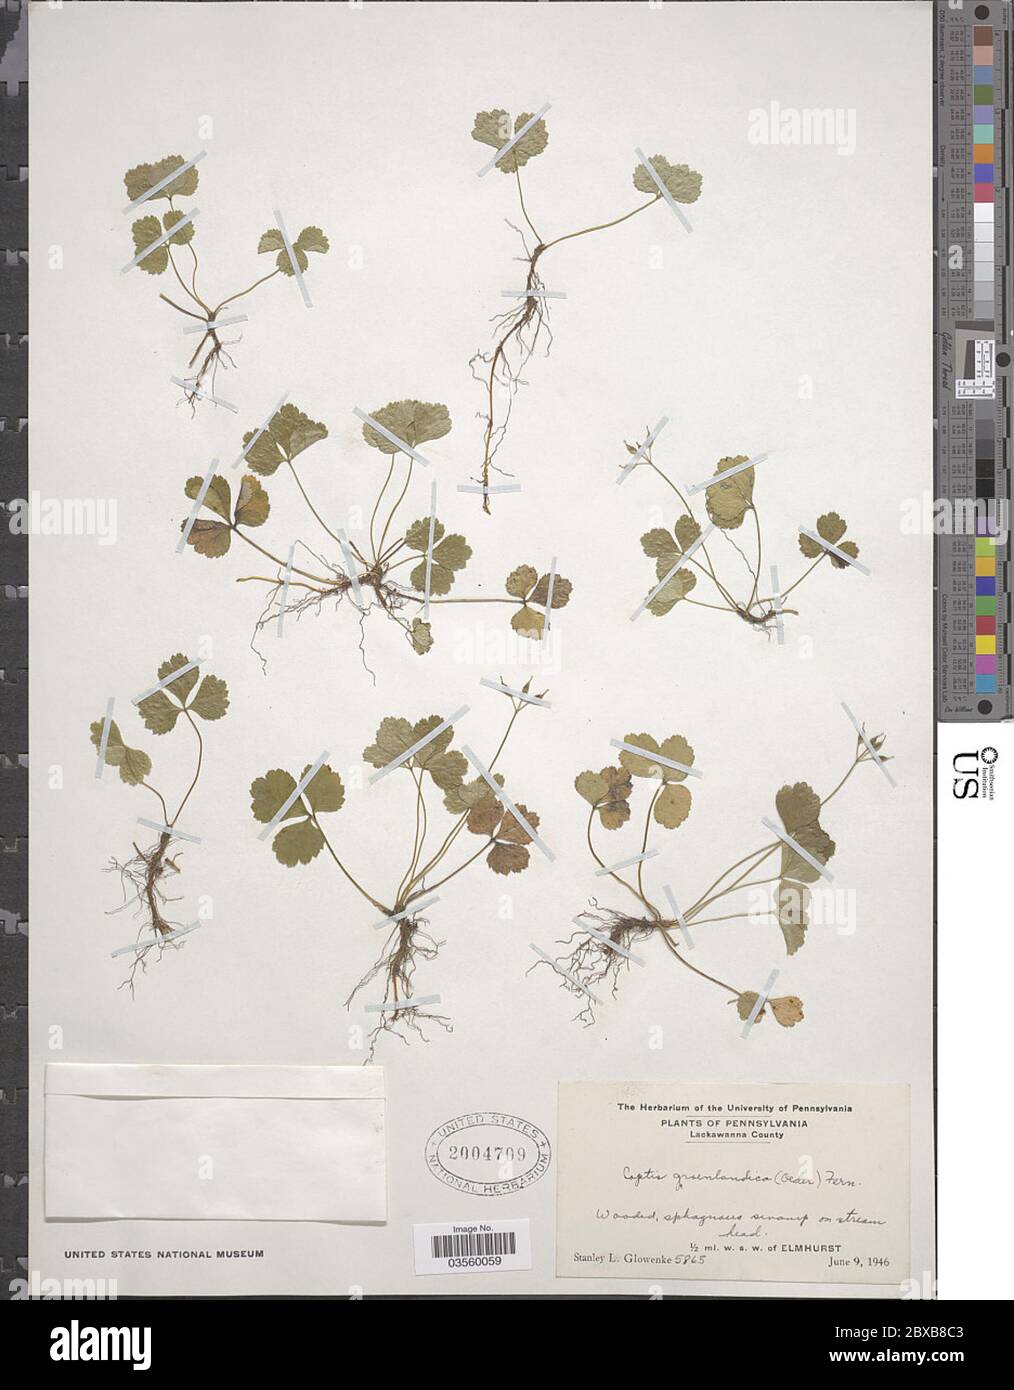 Coptis trifolia subsp groenlandica Oeder Hultn Coptis trifolia subsp groenlandica Oeder Hultn. Stock Photo